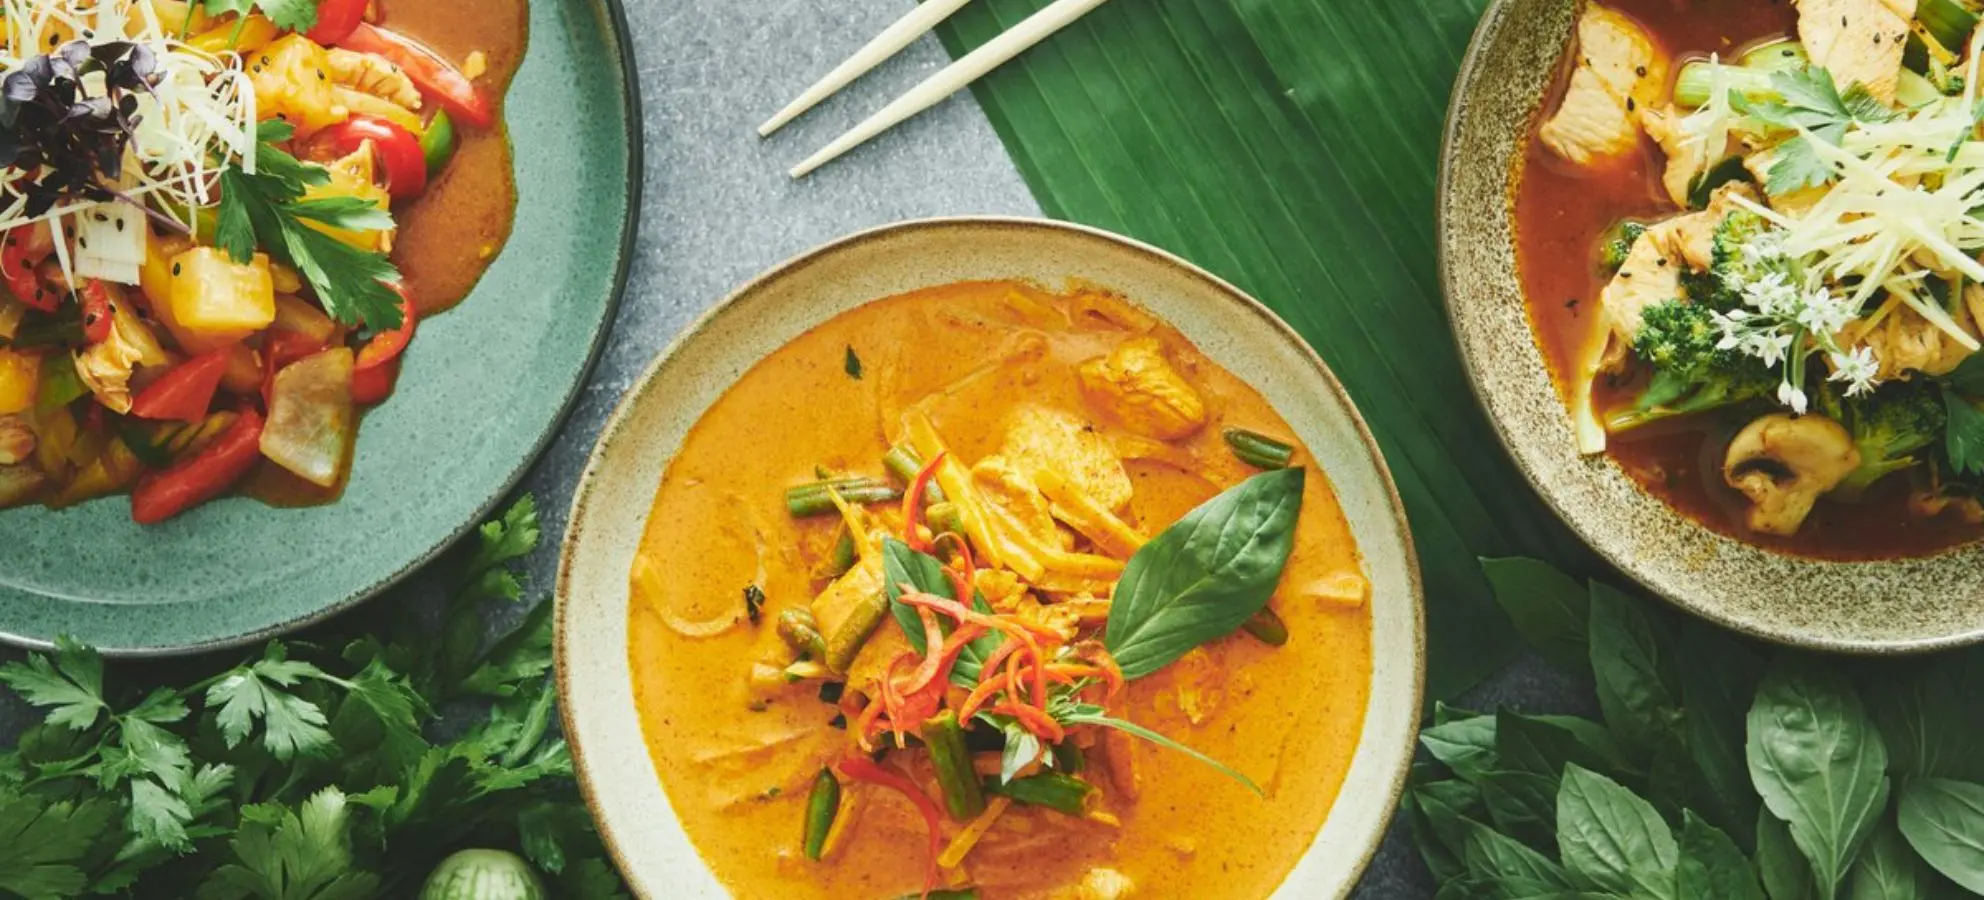 Charm - Thai Cuisine